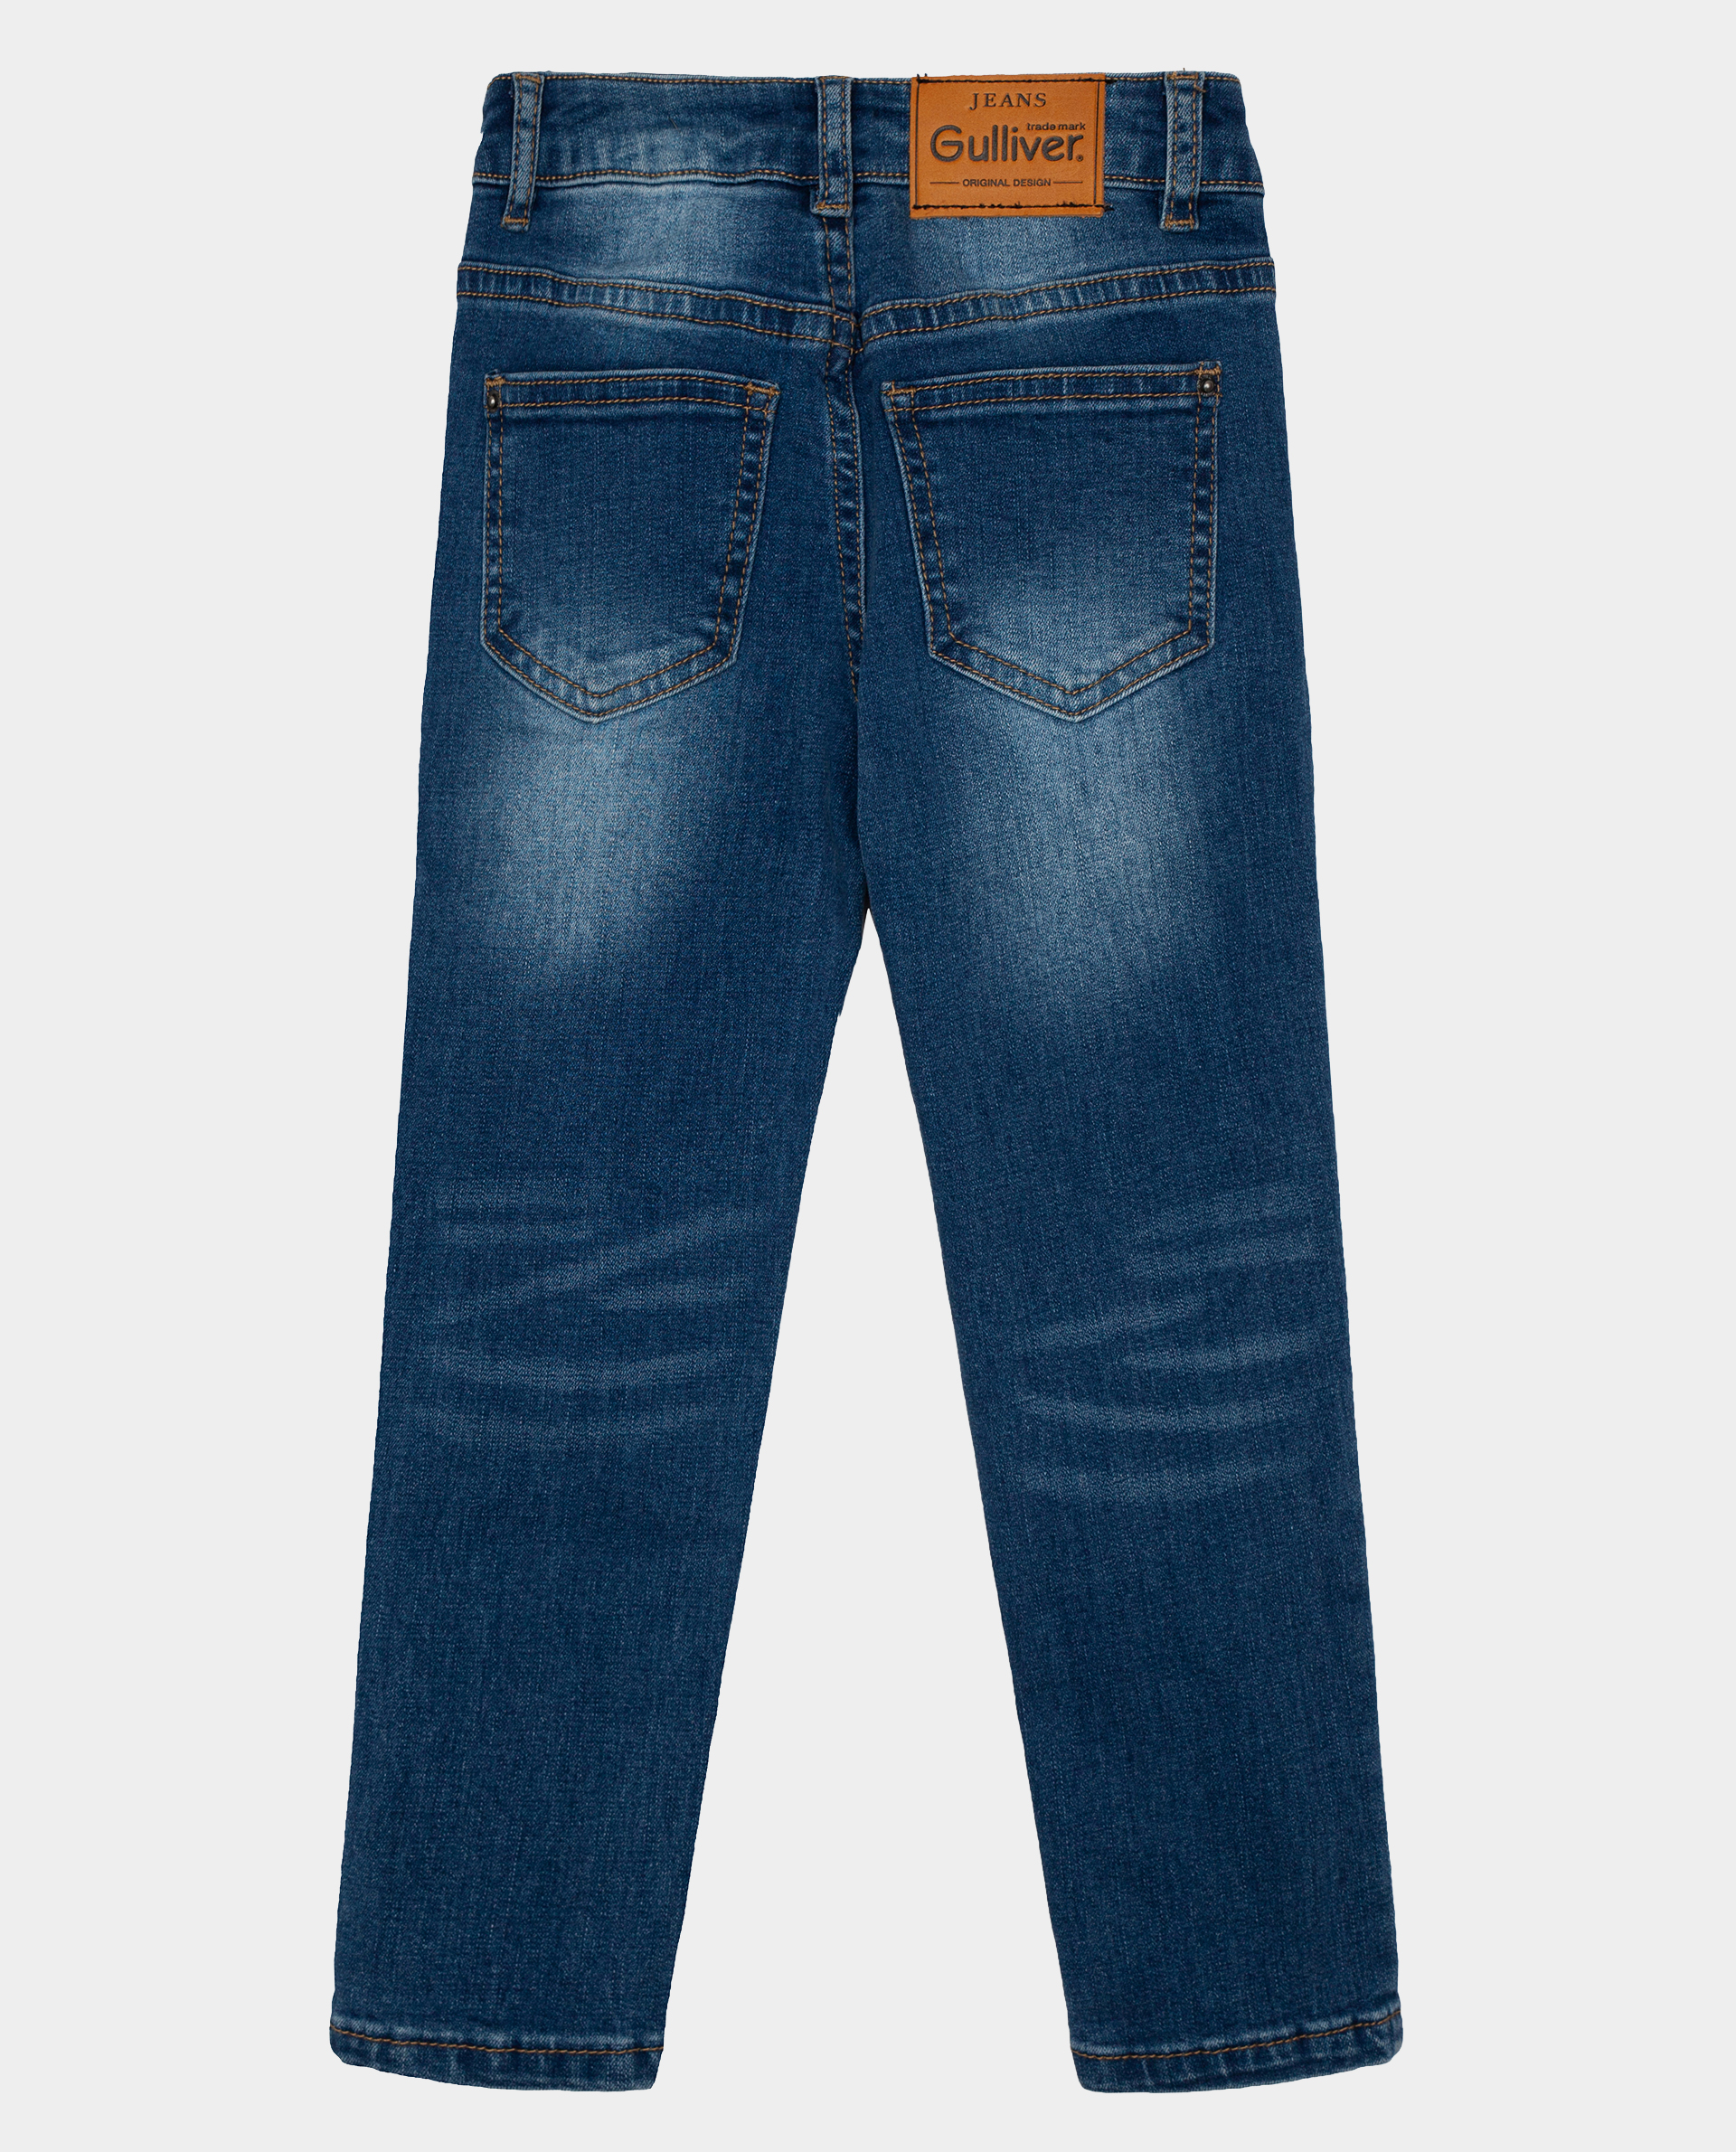 Голубые джинсы Gulliver 22002GMC6302, размер 98, цвет голубой slim / узкие - фото 4